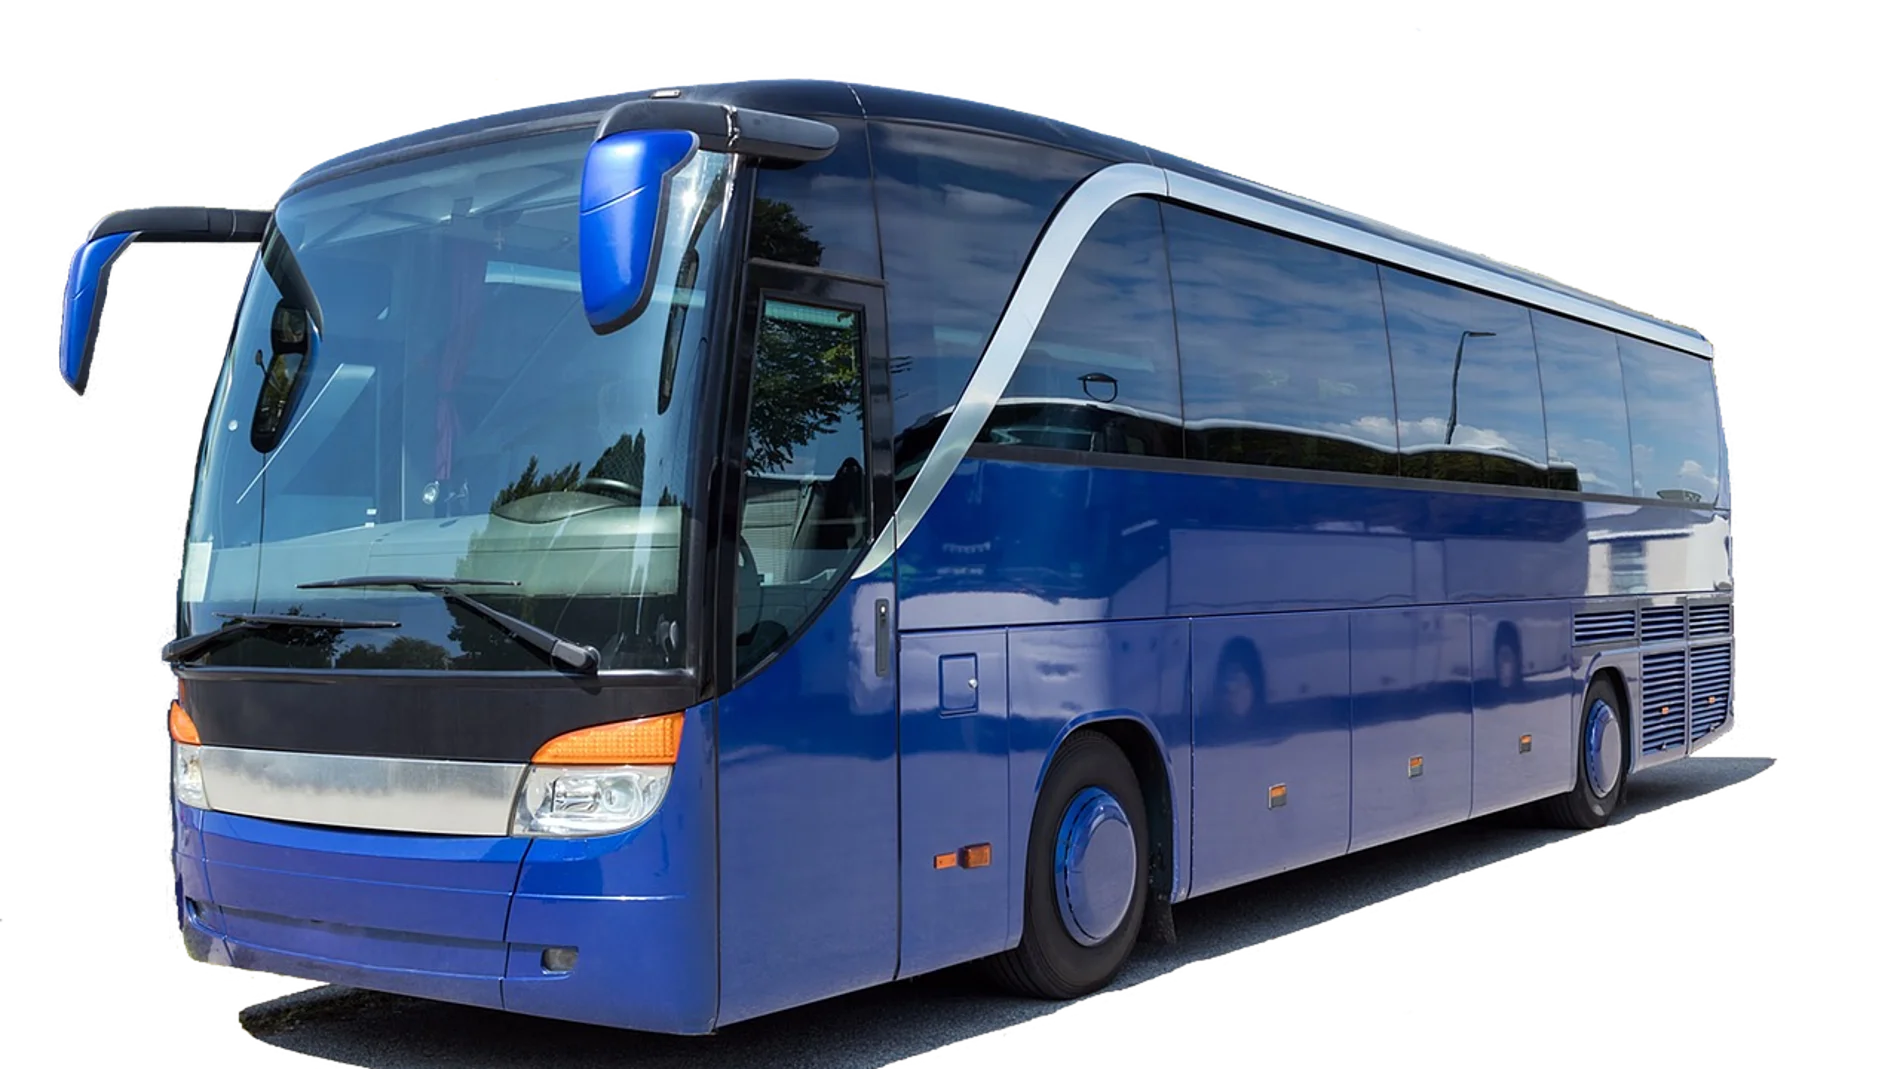 Oferta de empleo: Se buscan conductores de autobús por 1.500 euros